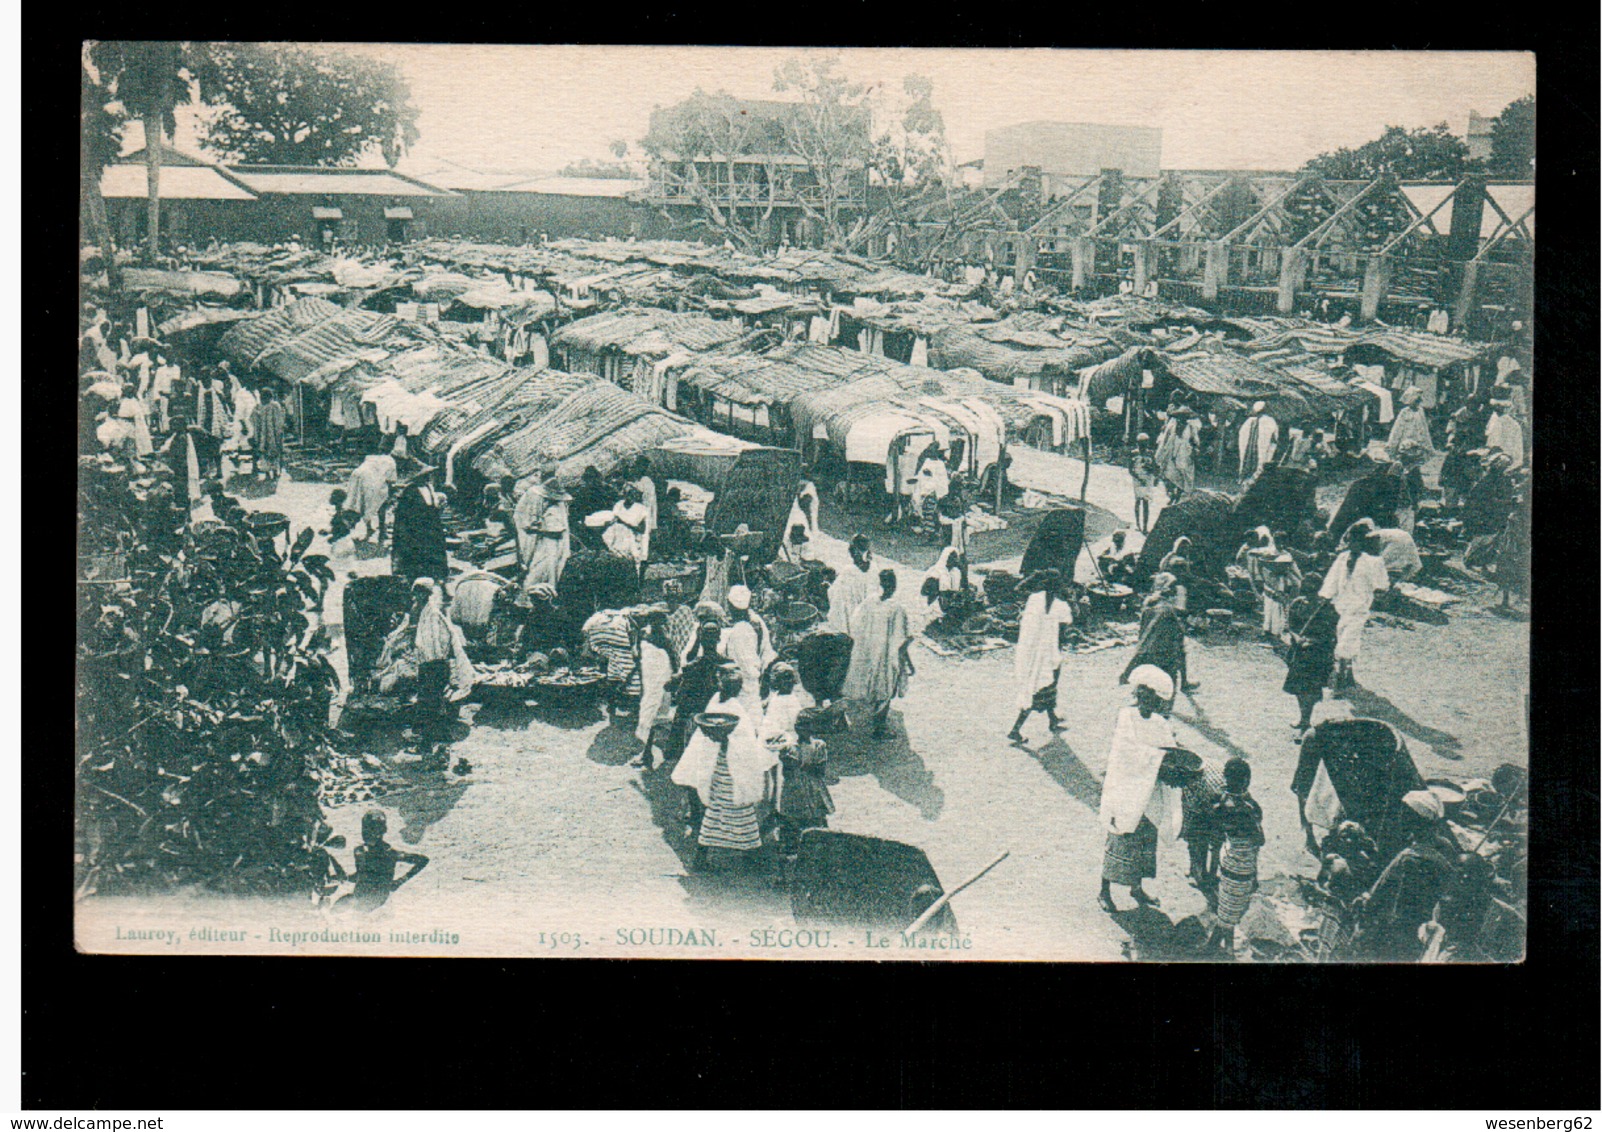 SOUDAN Ségou. Le Marché 1928 Old Postcard - Sudan